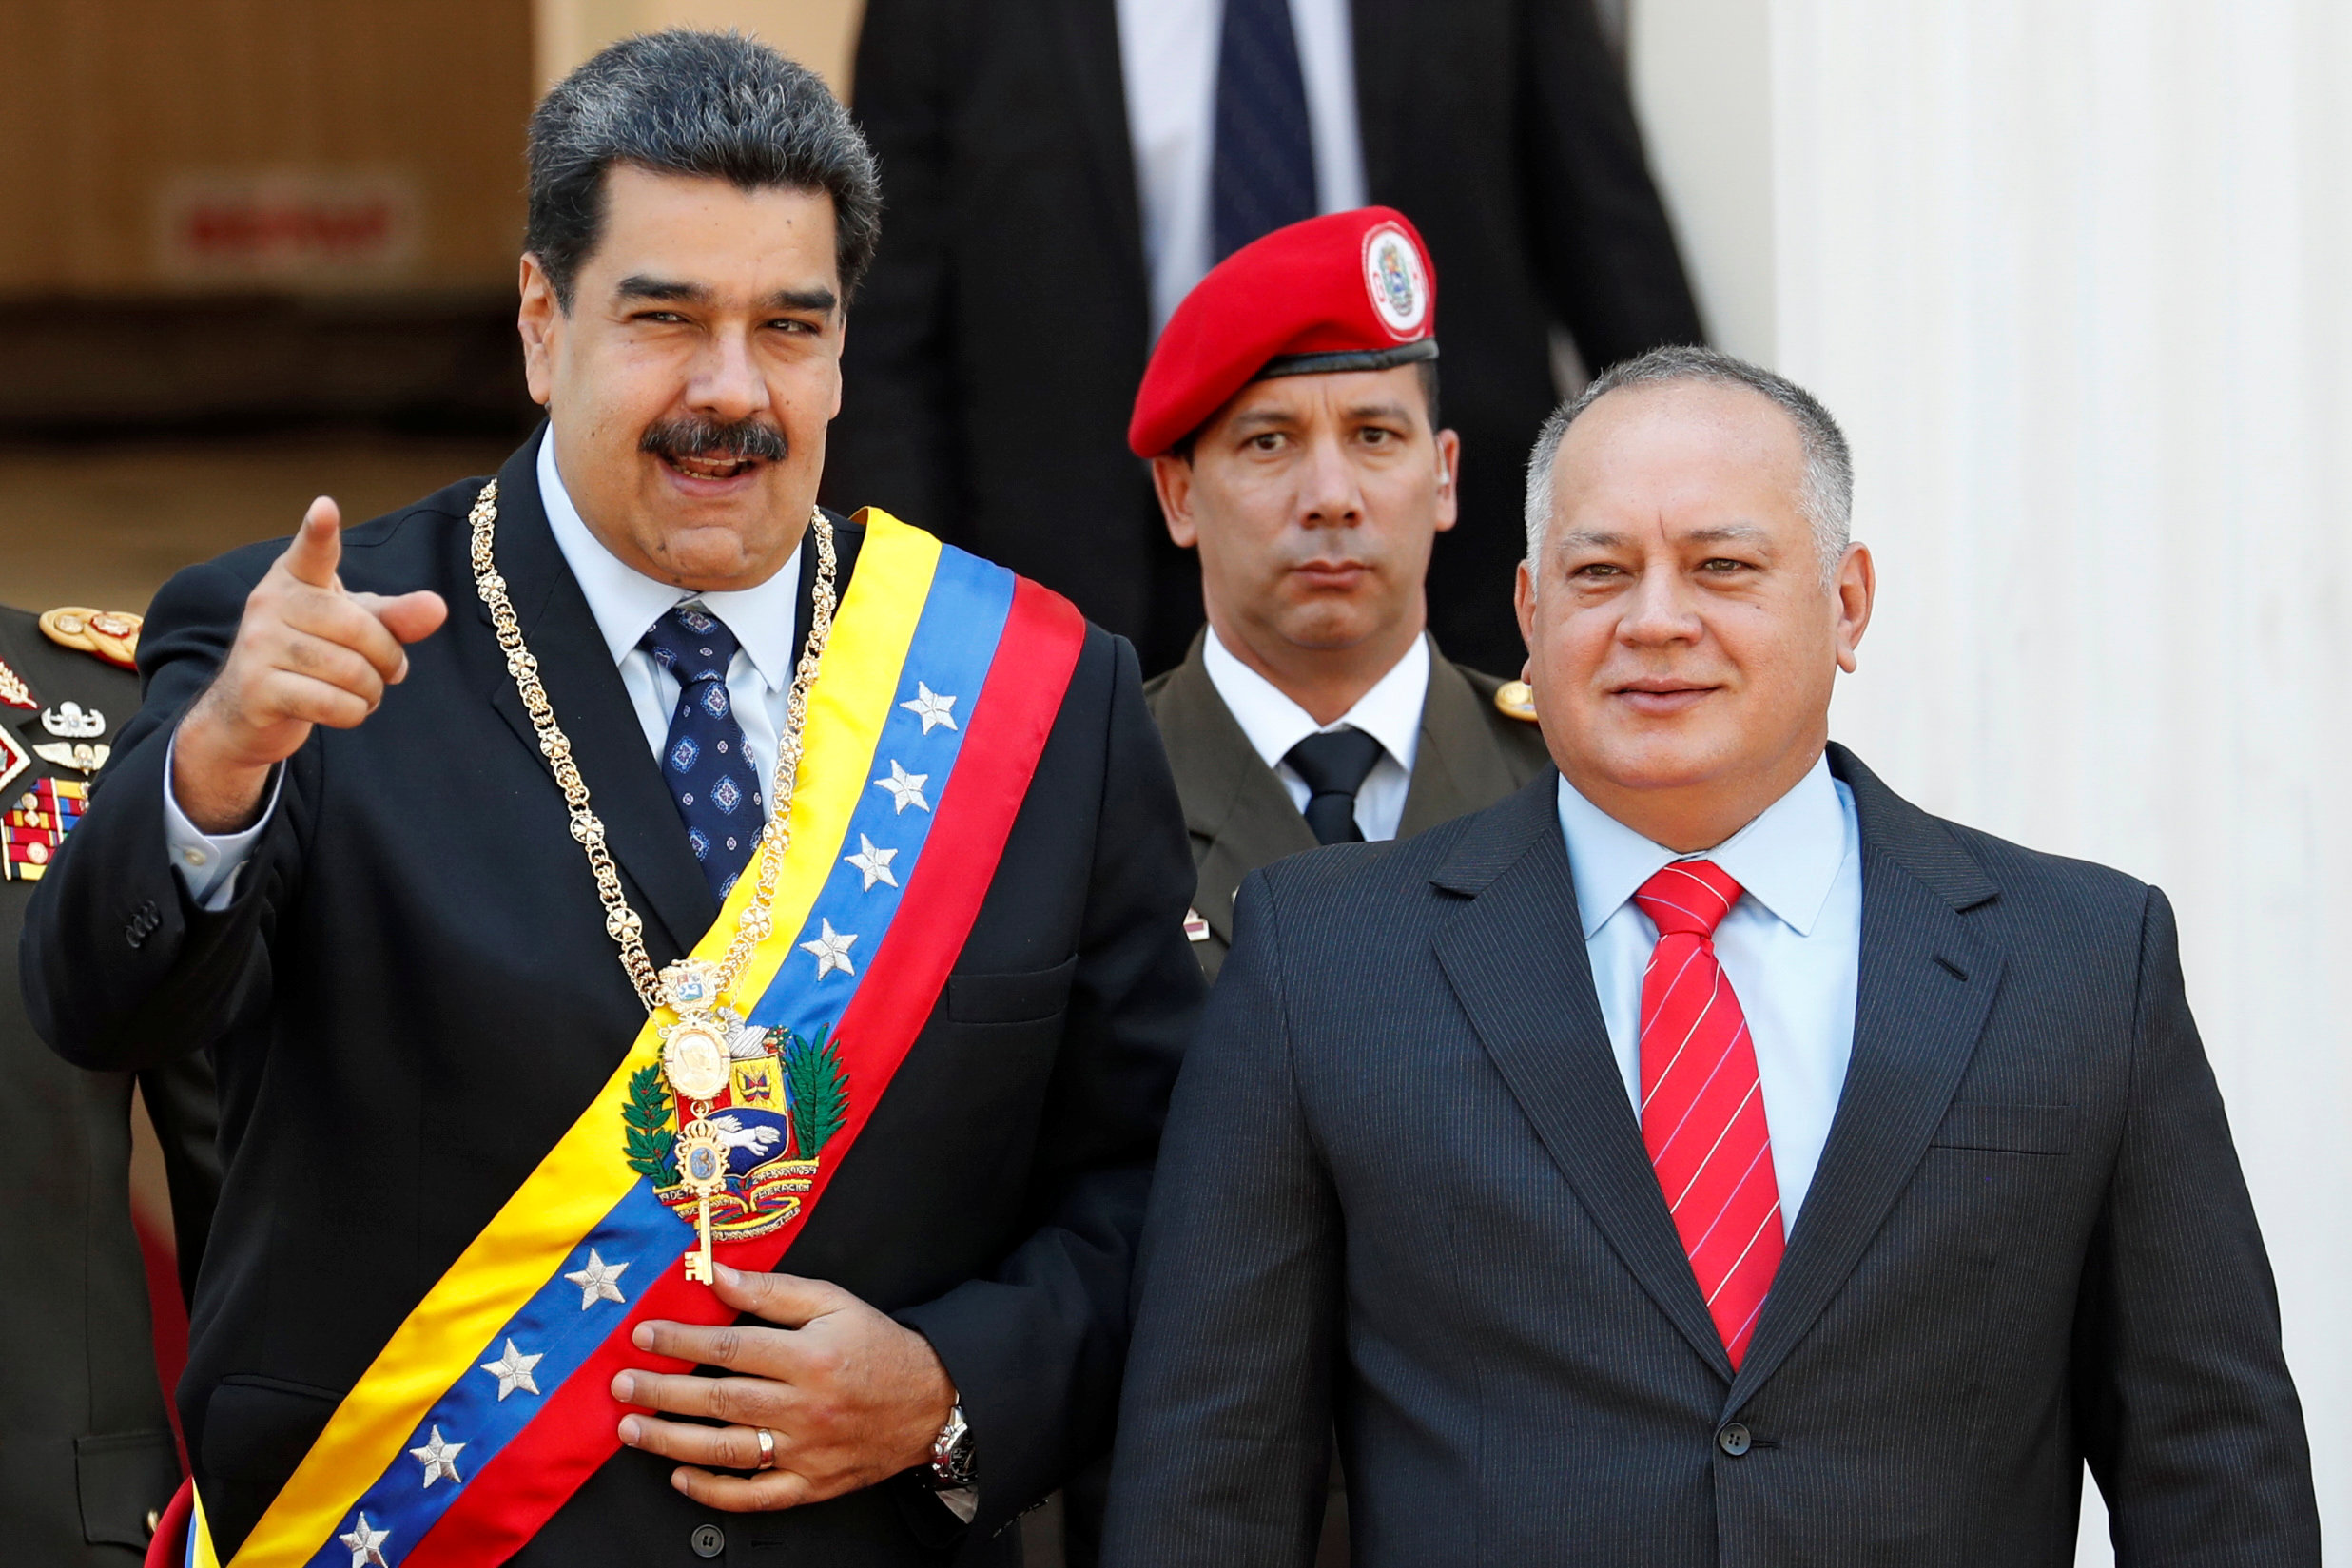 “Colapso económico de Venezuela hace insostenible gobierno de Maduro”